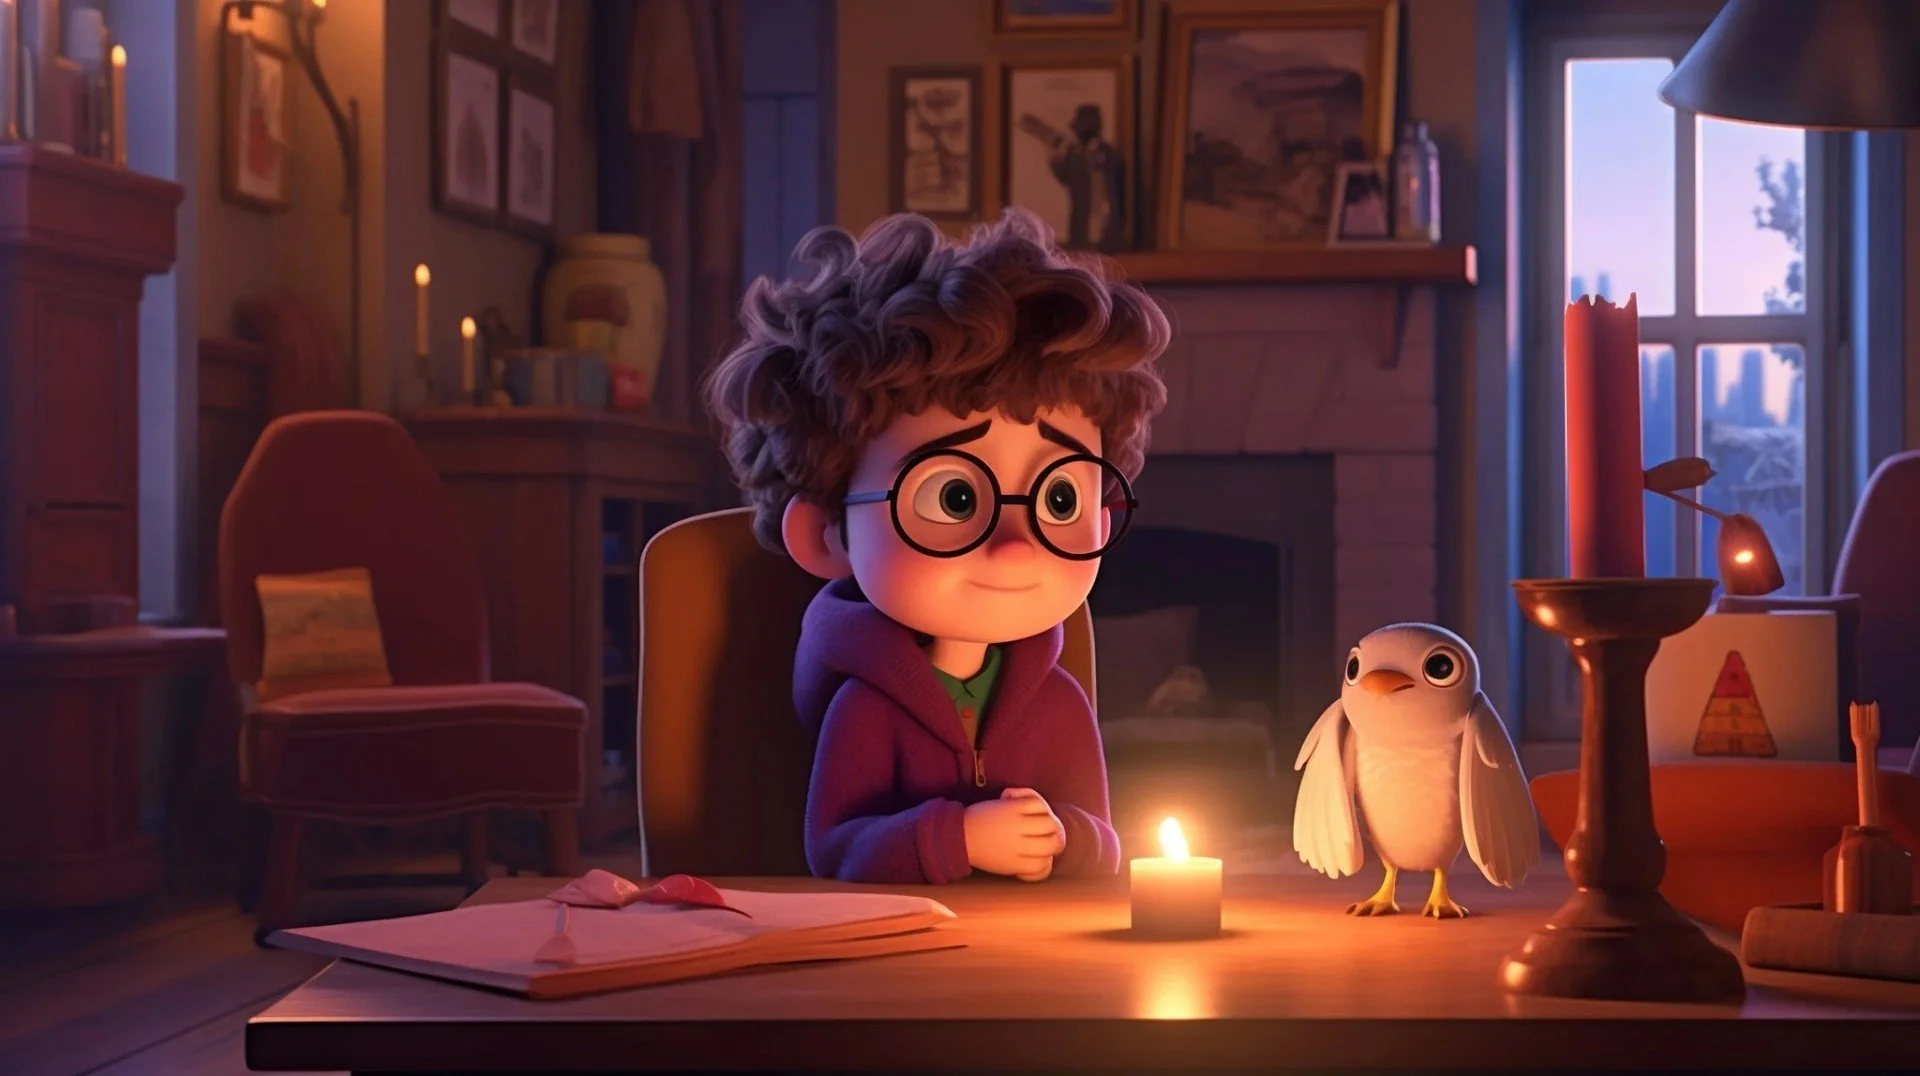 Персонажей из франшизы о Гарри Поттере показали в стиле мультфильмов студии Pixar